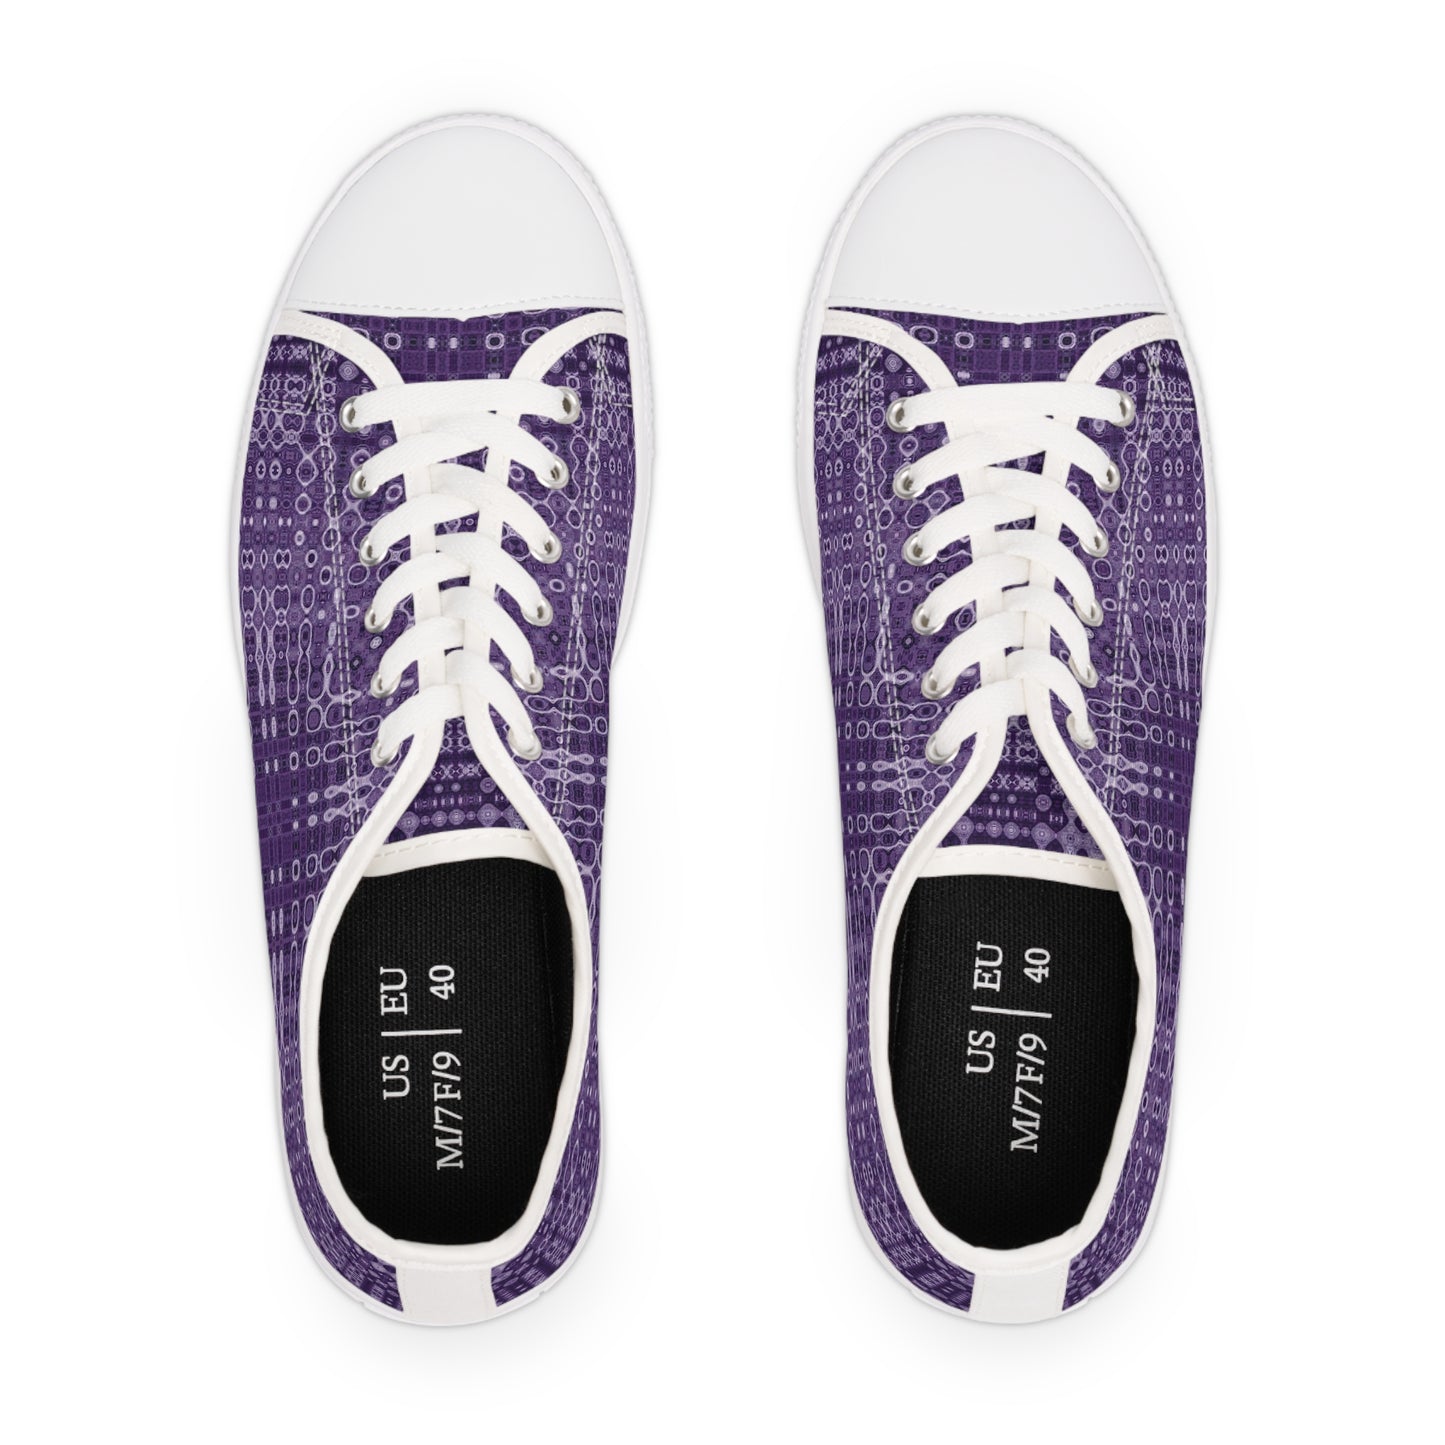 "Looped Circuits - Purple" JoySneaks Women's Low Top Sneakers